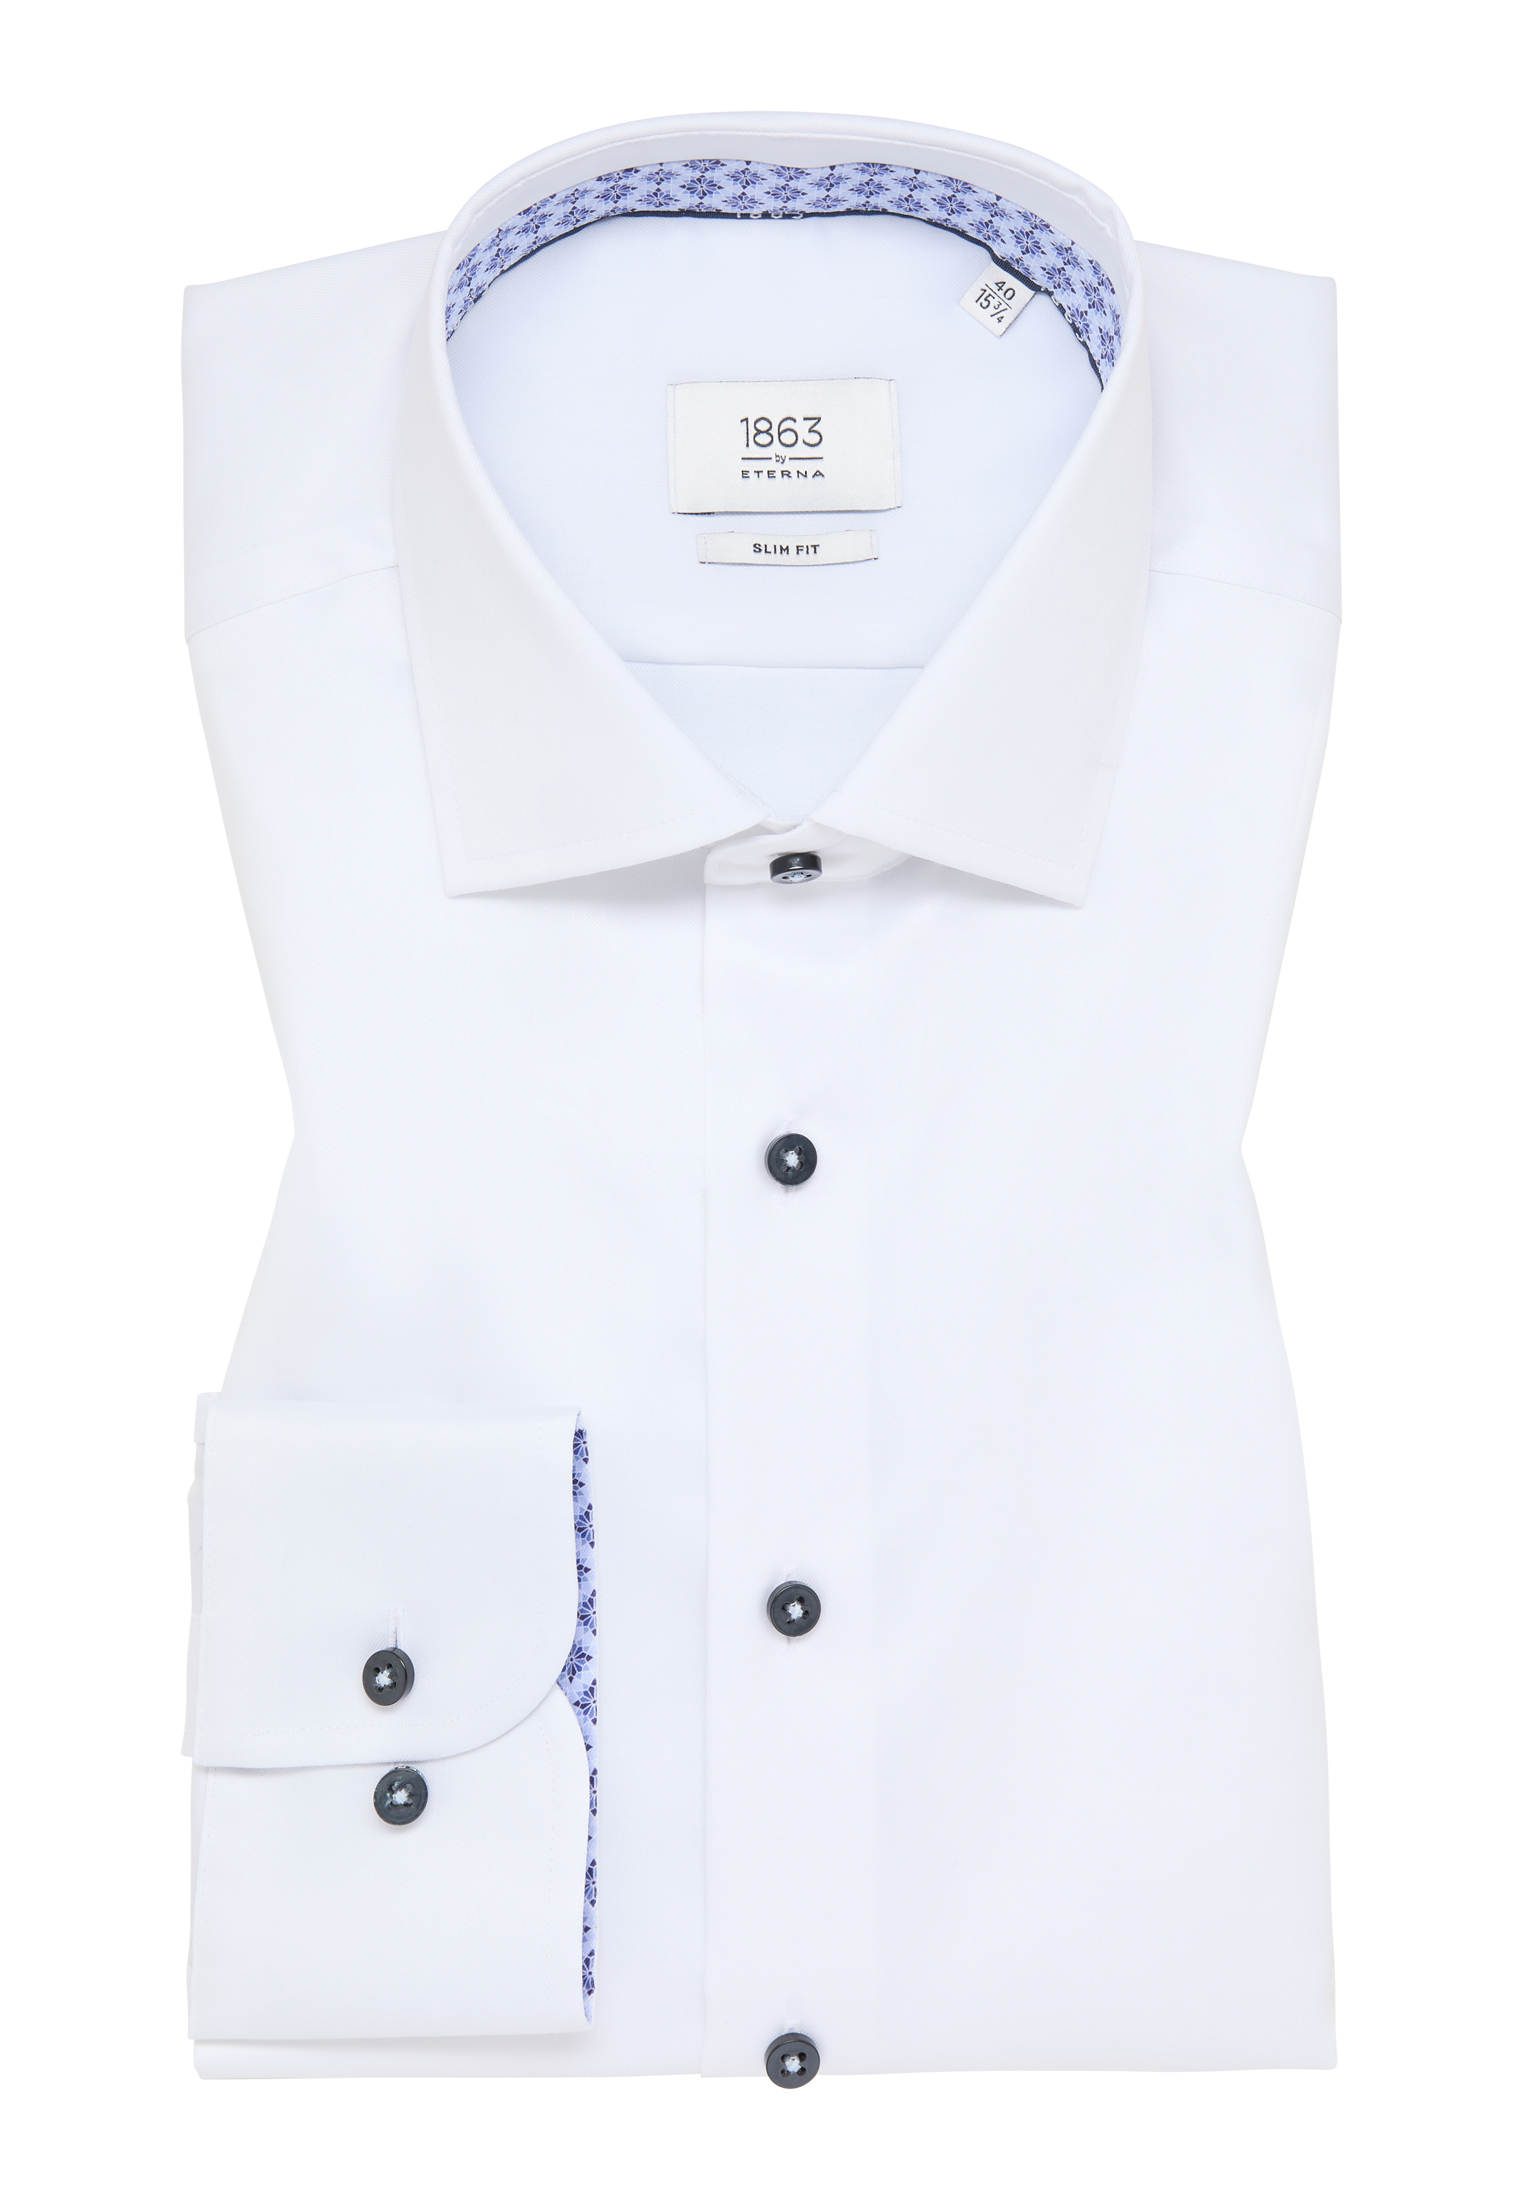 SLIM FIT Luxury Shirt in weiß unifarben | weiß | 42 | Langarm |  1SH12543-00-01-42-1/1 | Seidenschals